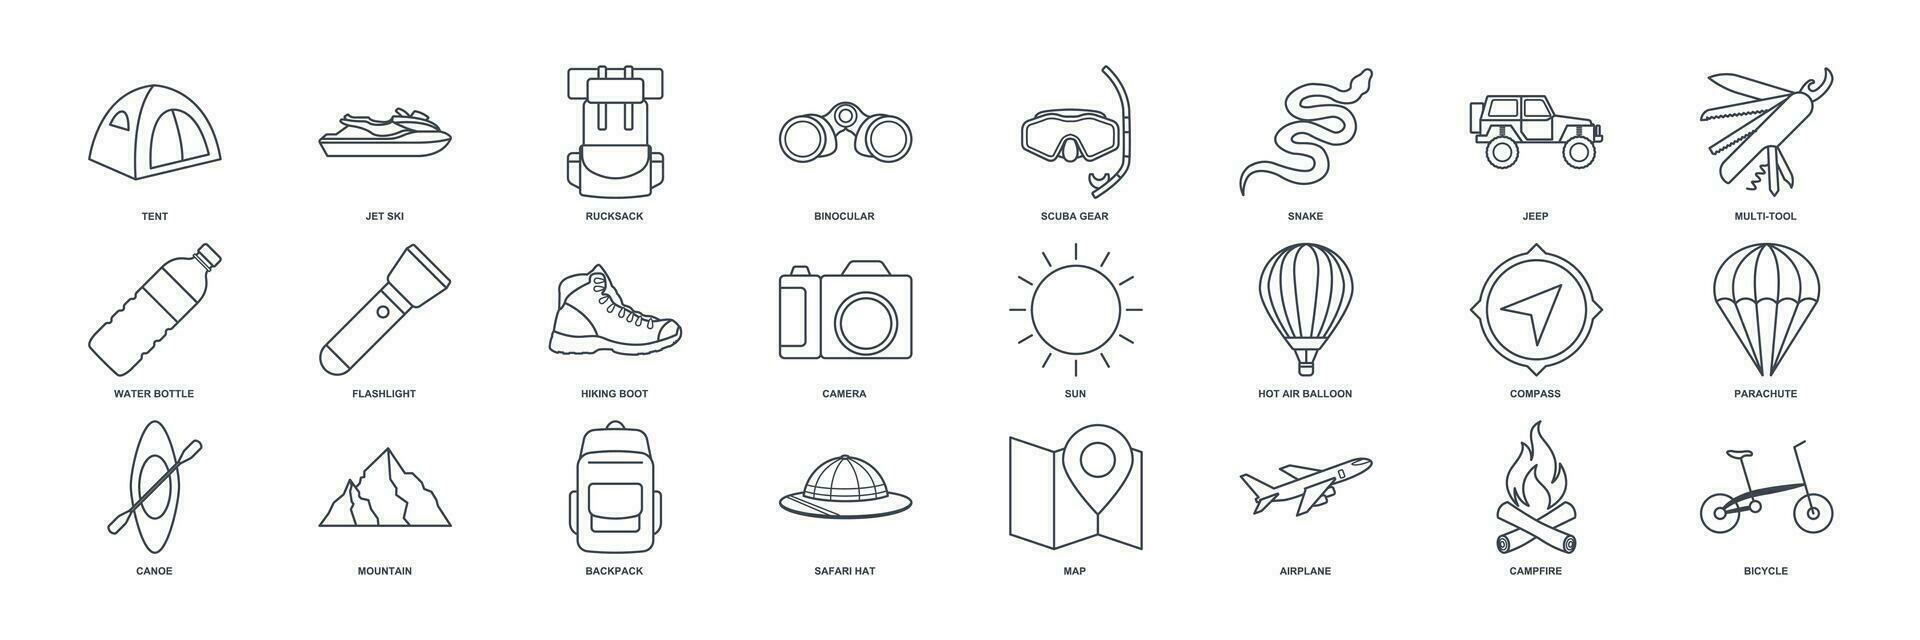 aventure icône ensemble, été camping voyage symboles collection, logo illustrations, tourisme ou randonnée signe paquet isolé vecteur illustration